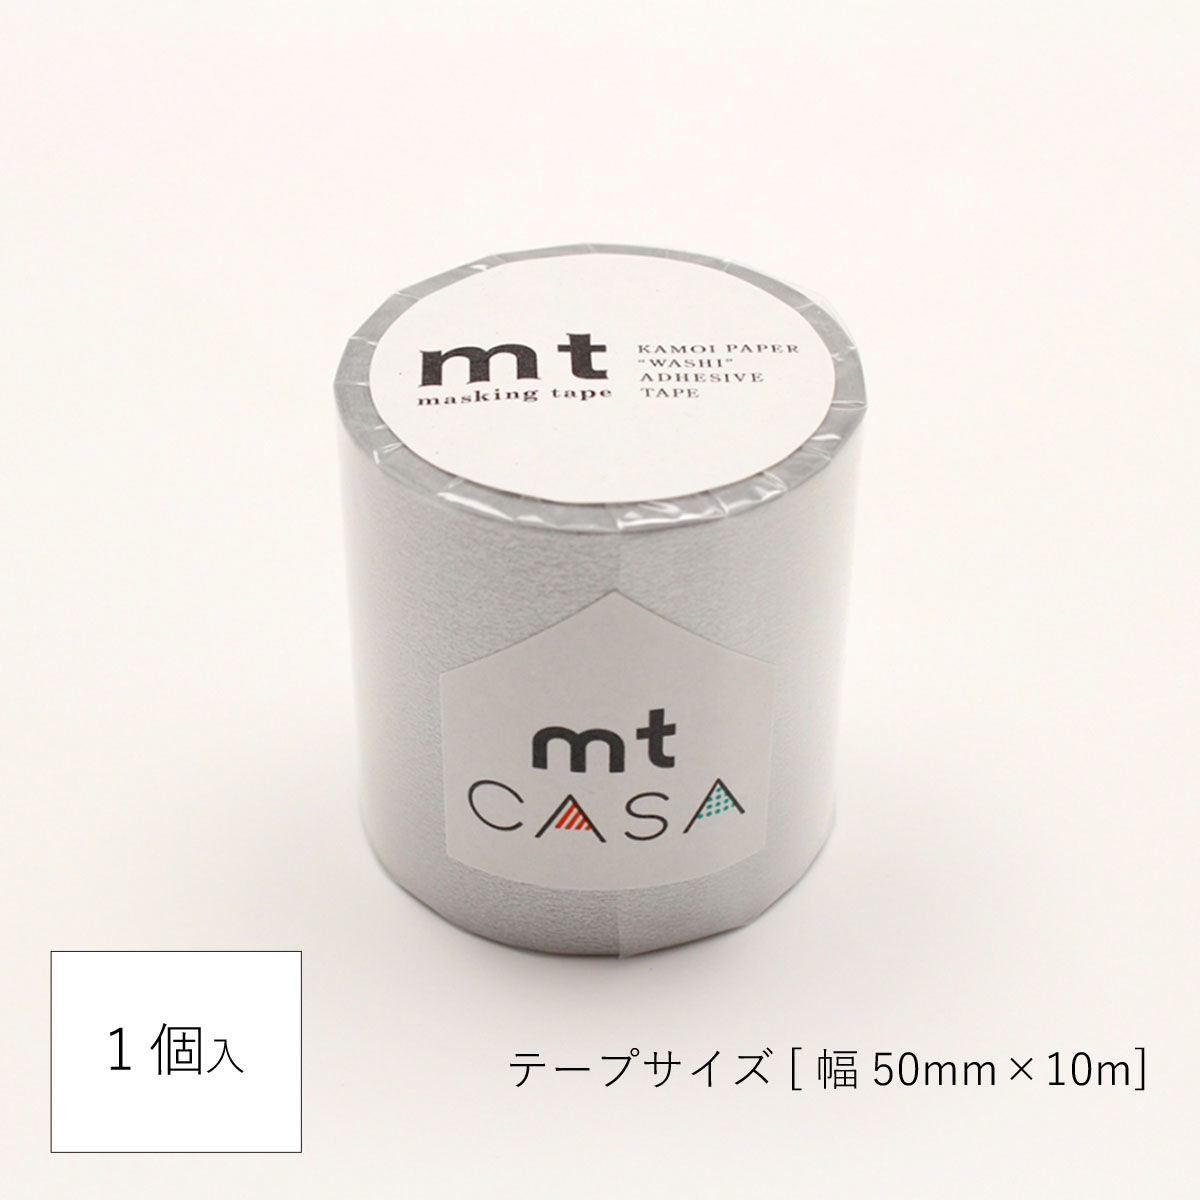 mtCASA マスキングテープ 50mm×10m 銀 つつみのこと